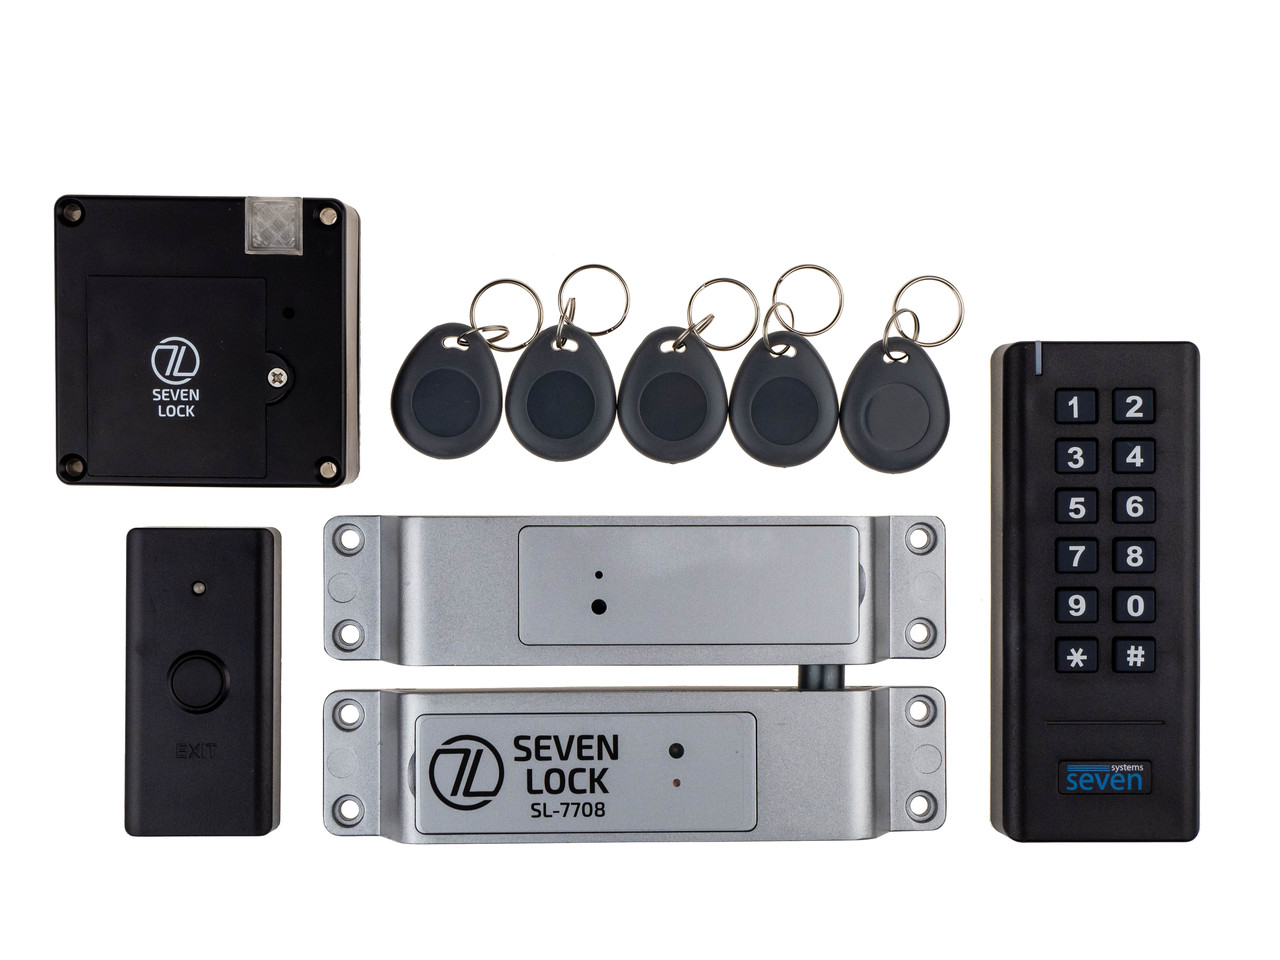 Бездротовий комплект контролю доступу з керуванням по Bluetooth SEVEN LOCK SL-7708b, фото 1